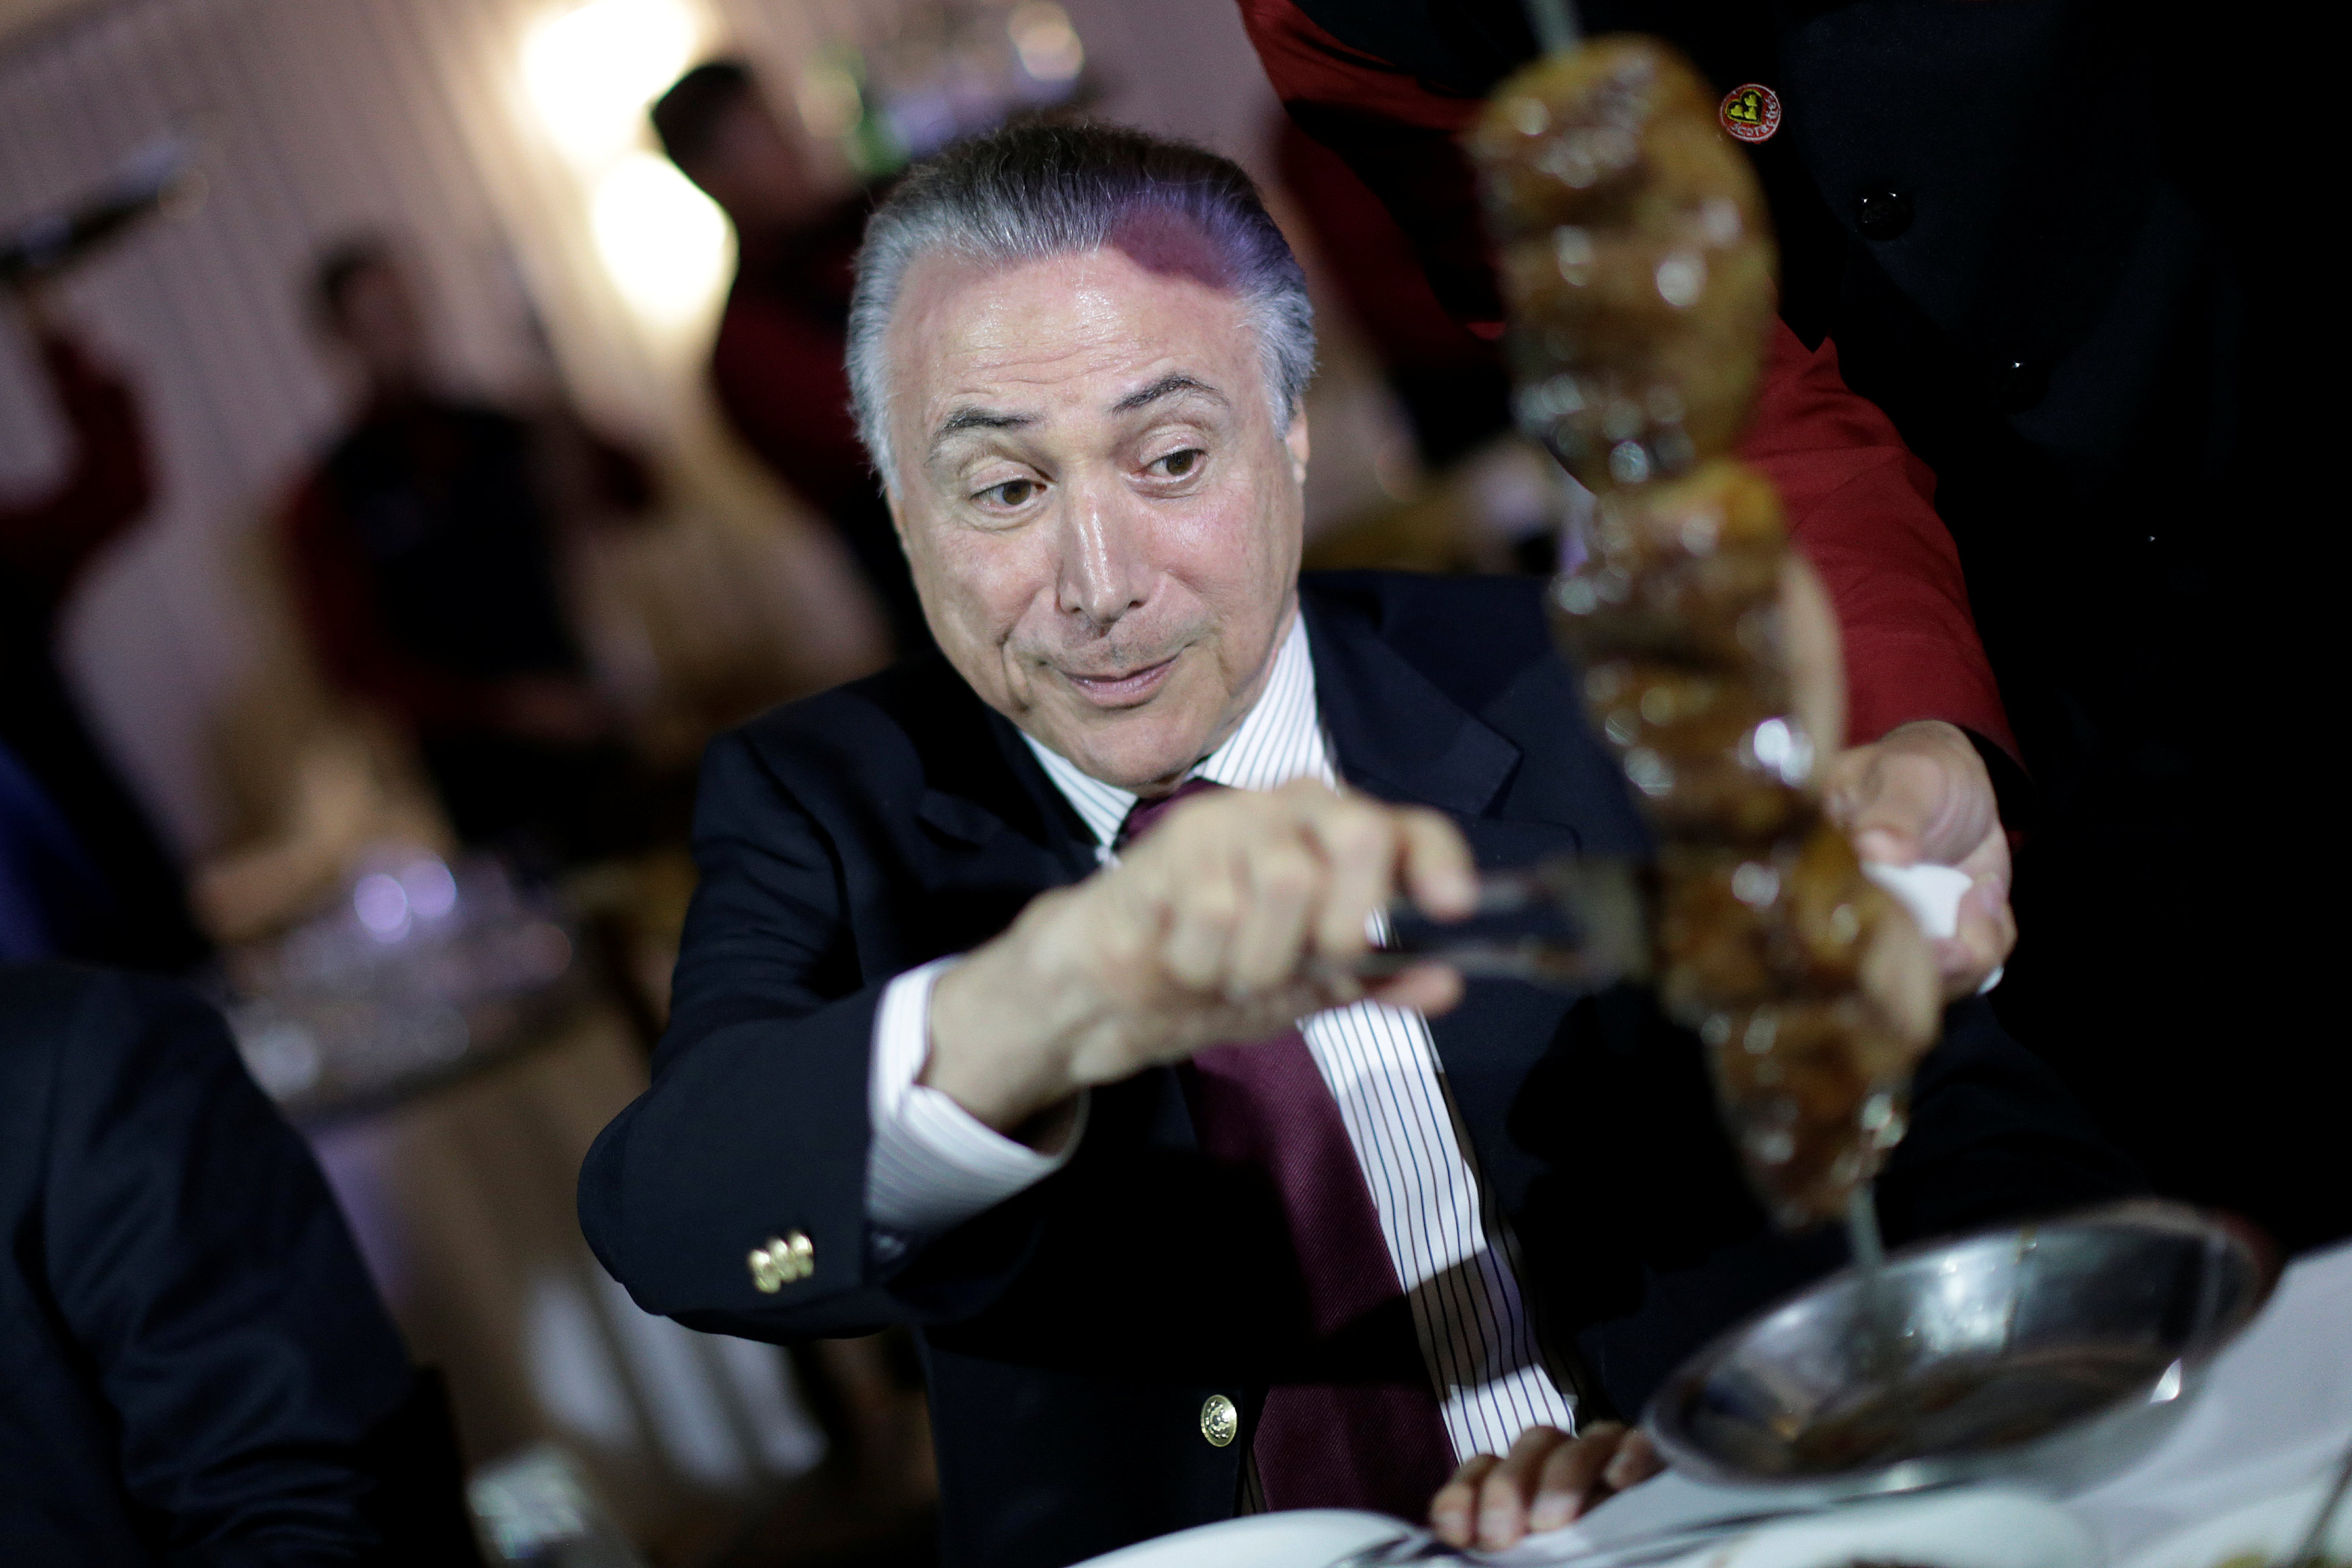 ميشيل تامر رئيس البرازيل يقطع شرائح اللحم